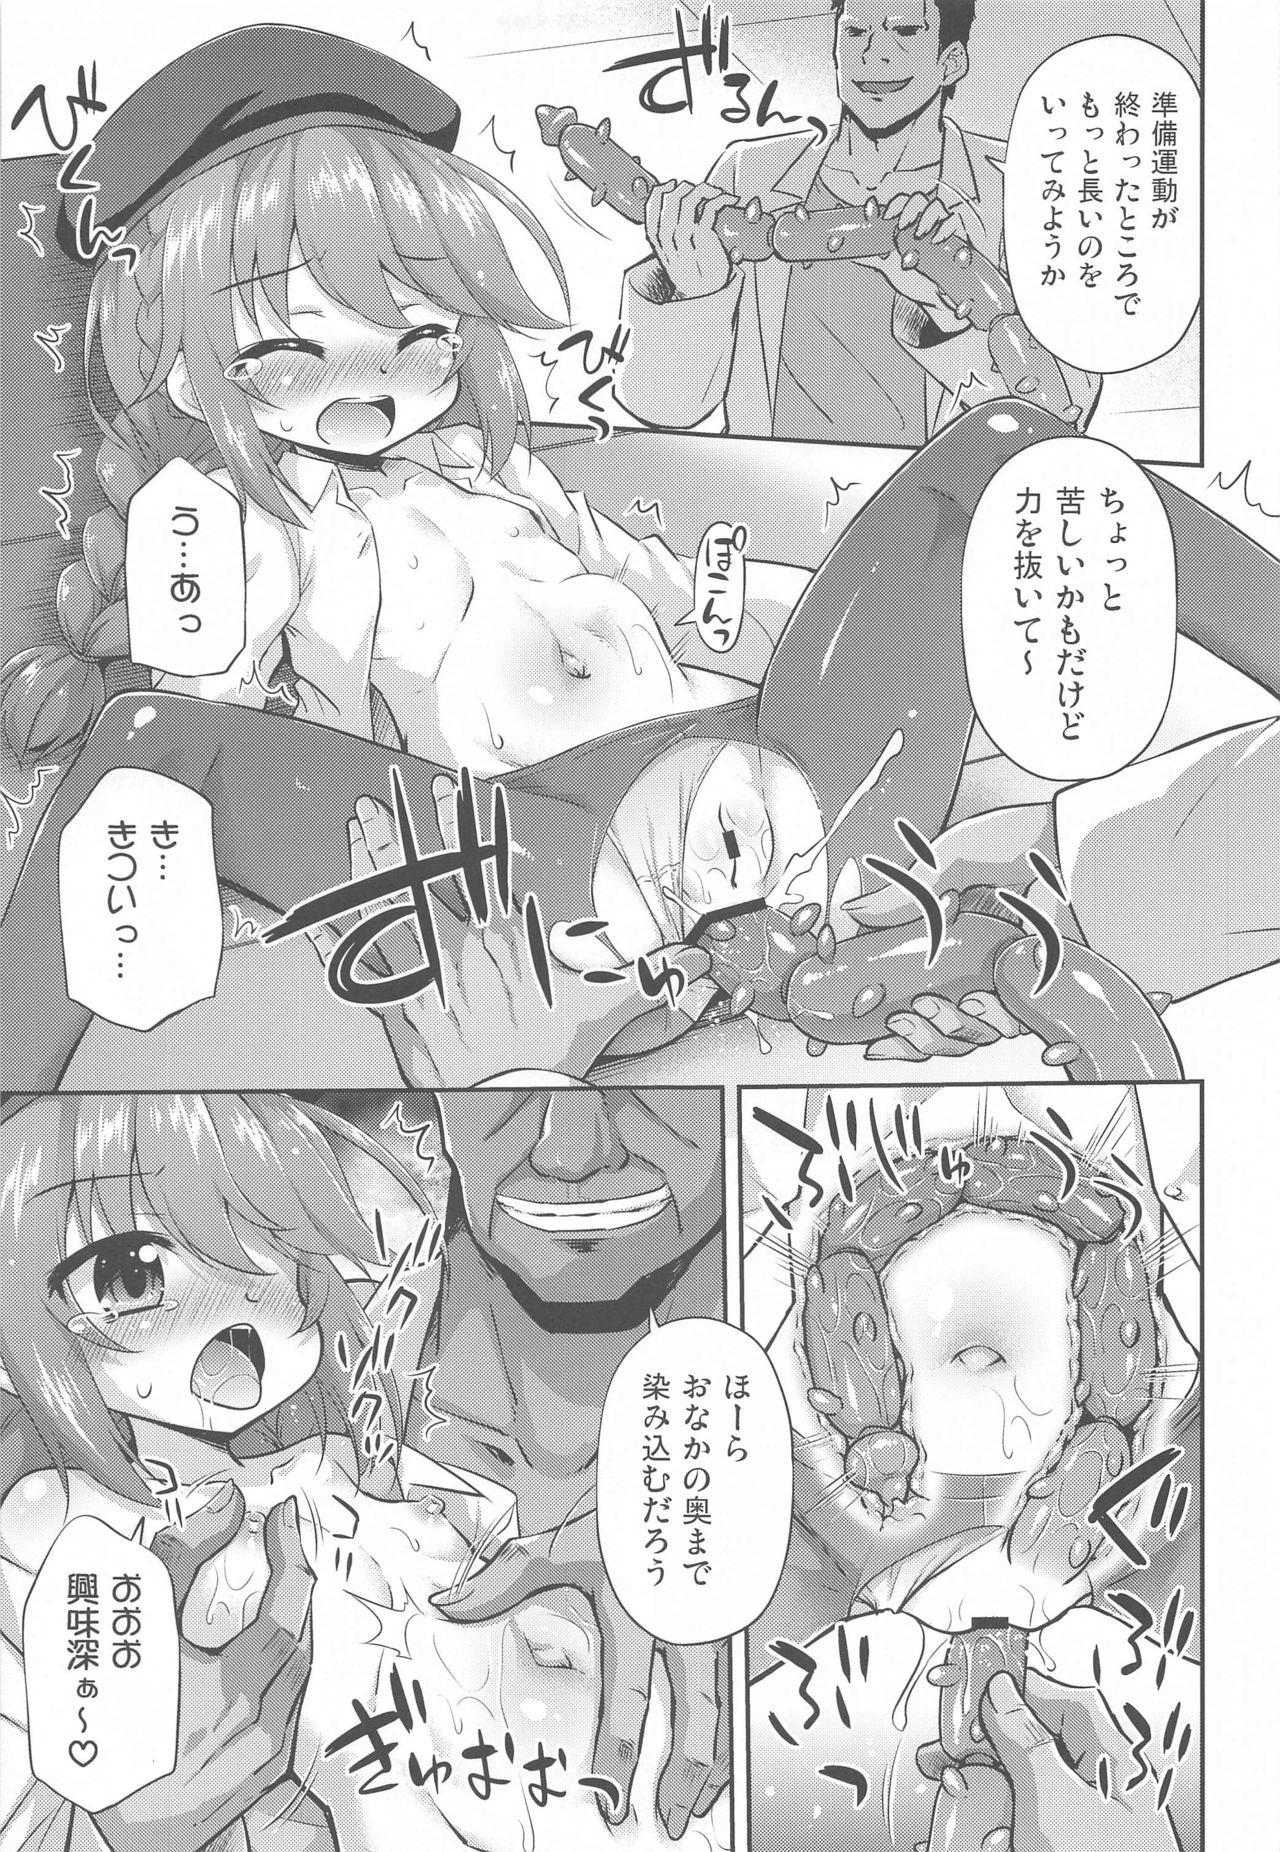 Pissing Nannidemo Kyomifukaa! na Yuni-chan - Princess connect Rebolando - Page 8